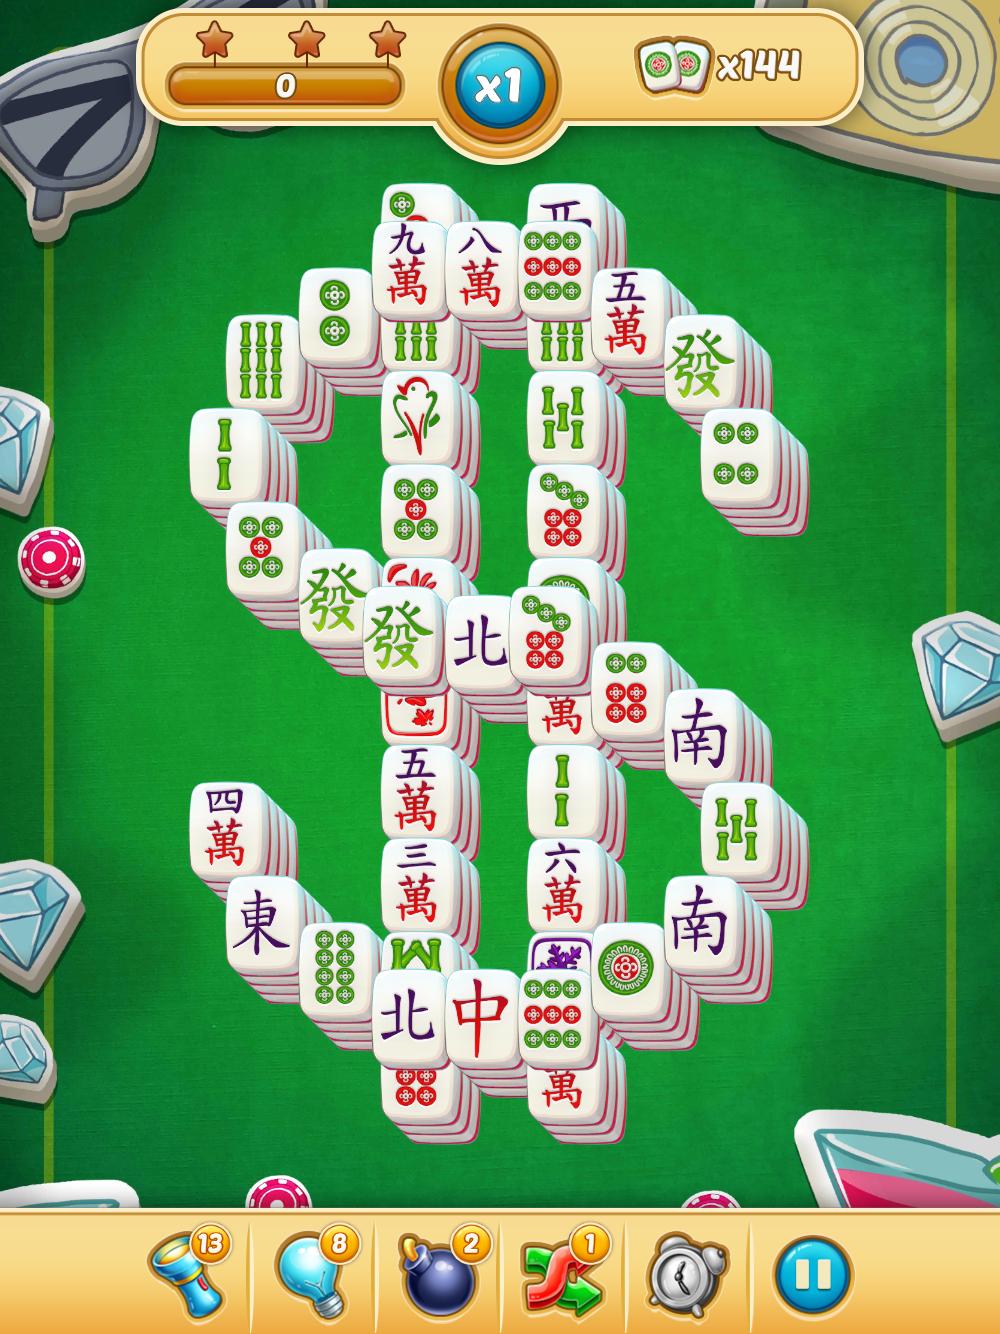 Mahjong City Tours Free Mahjong Classic Game 40.1.0 Screenshot 15